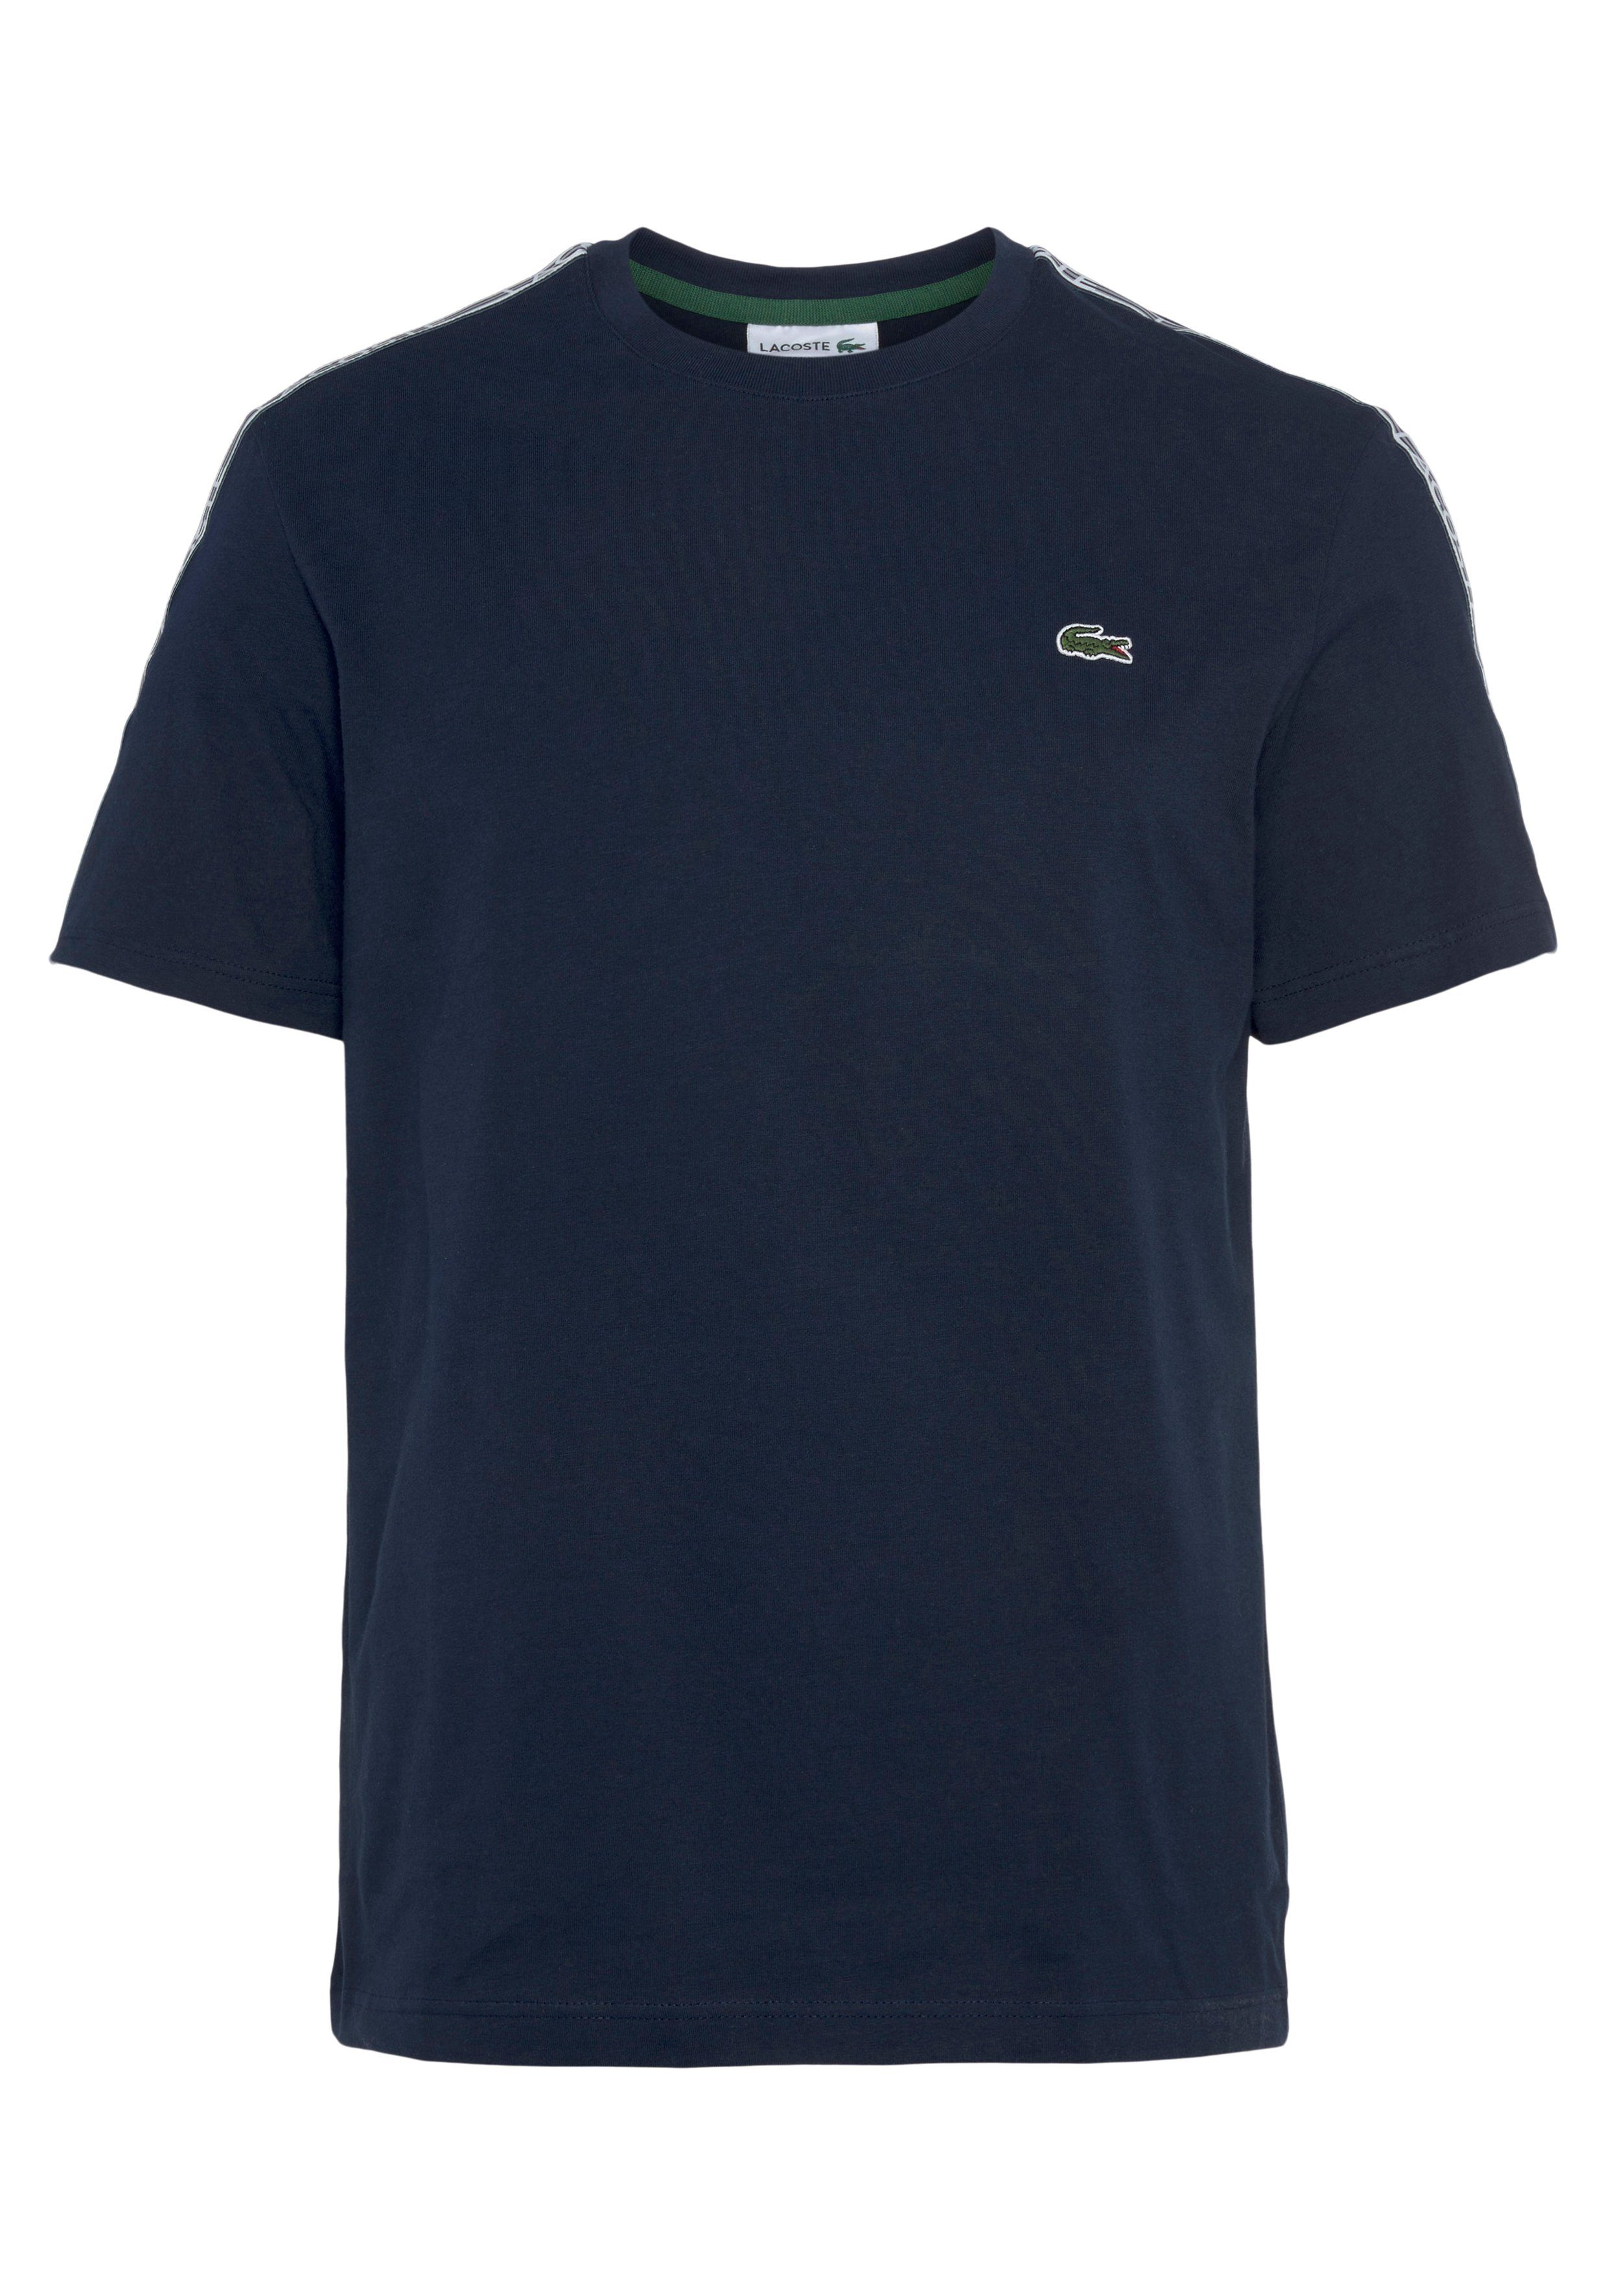 Lacoste den an T-Shirt Schultern mit navy blue Kontrastband beschriftetem